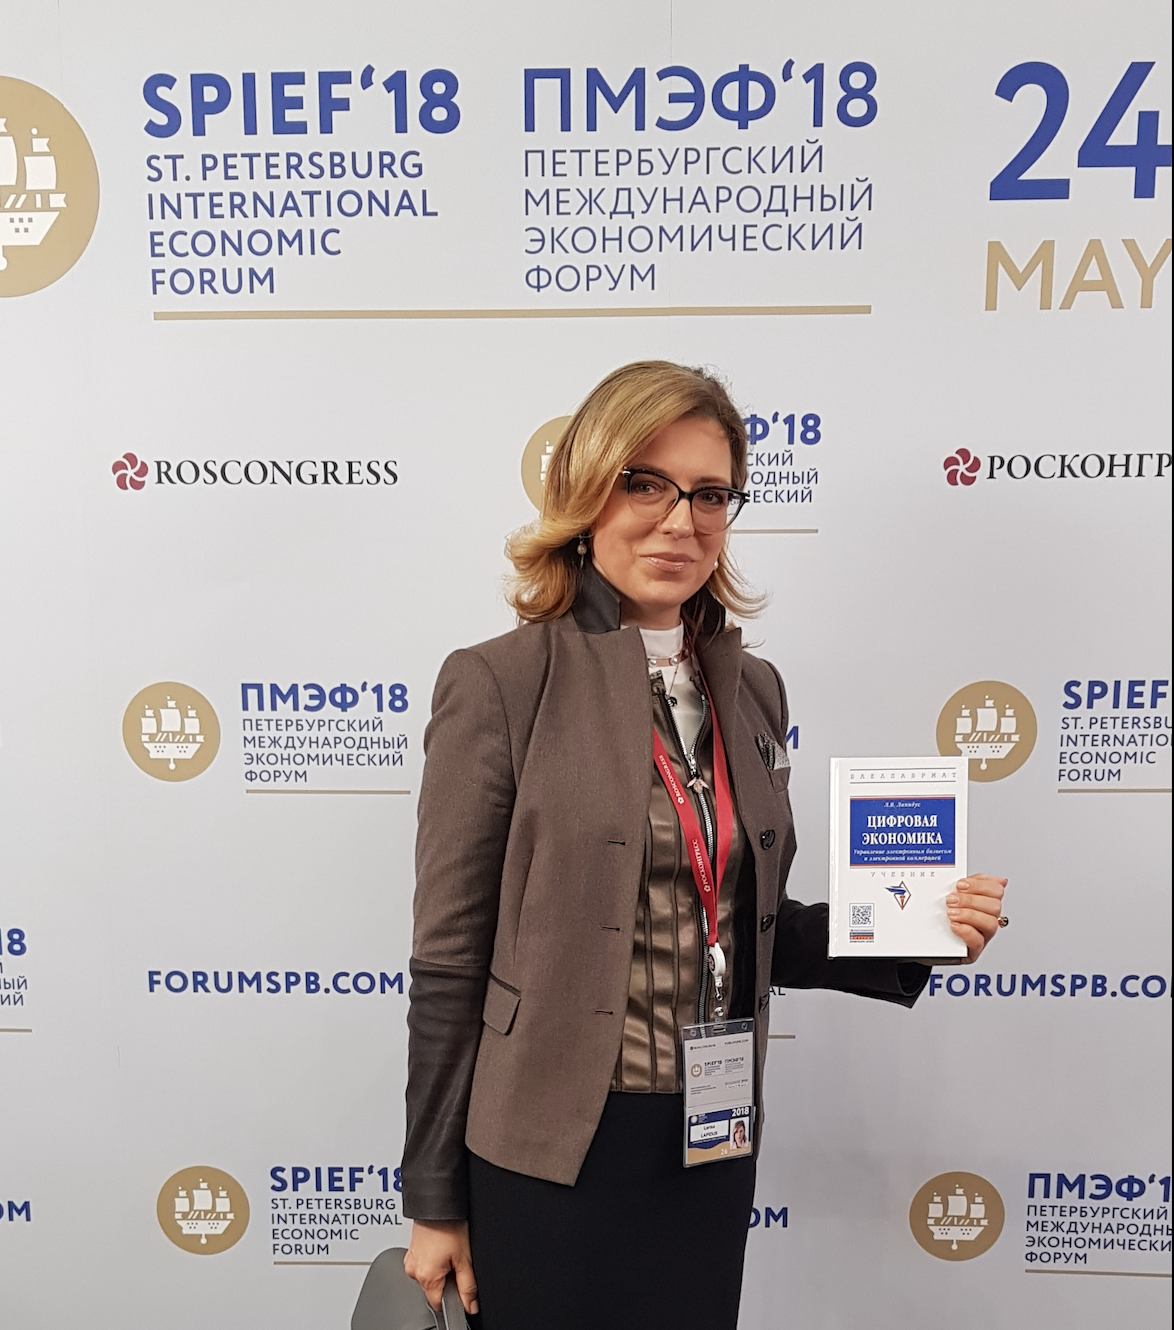 Профессор Л.В.Лапидус приняла участие в работе Петербургского международного экономического форума.